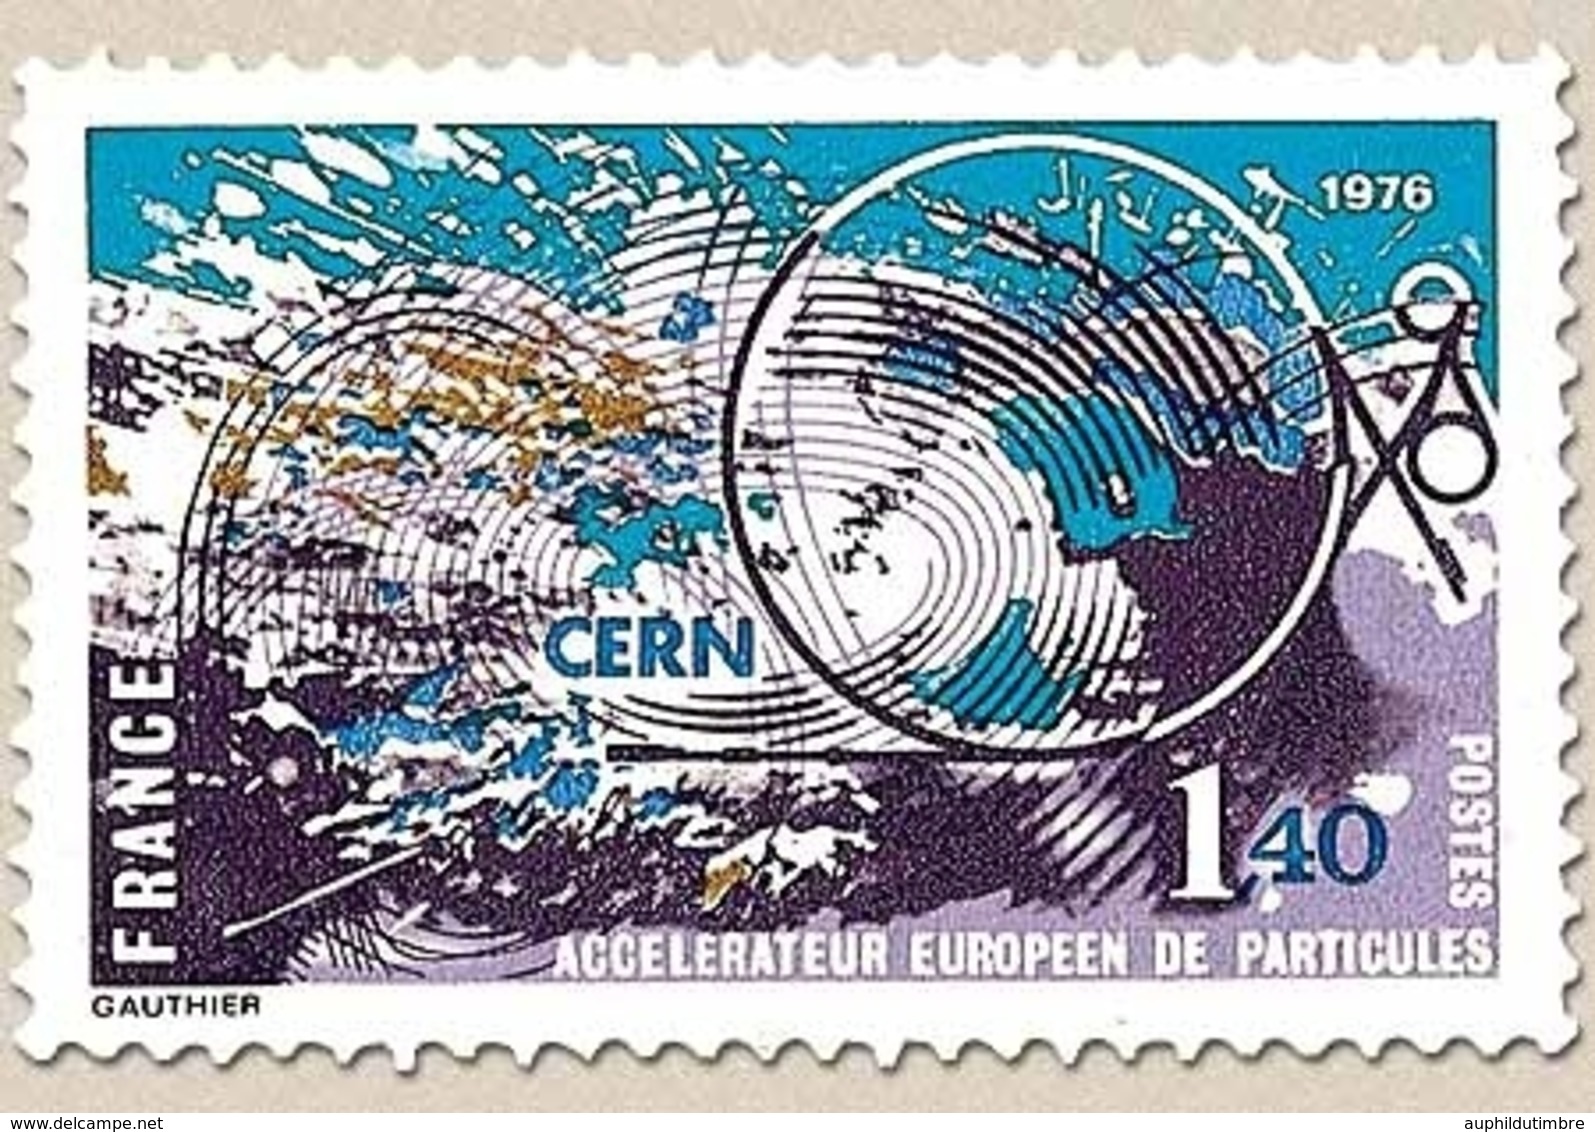 Accélérateur Européen De Particules. 1f.40 Multicolore Y1908 - Unused Stamps